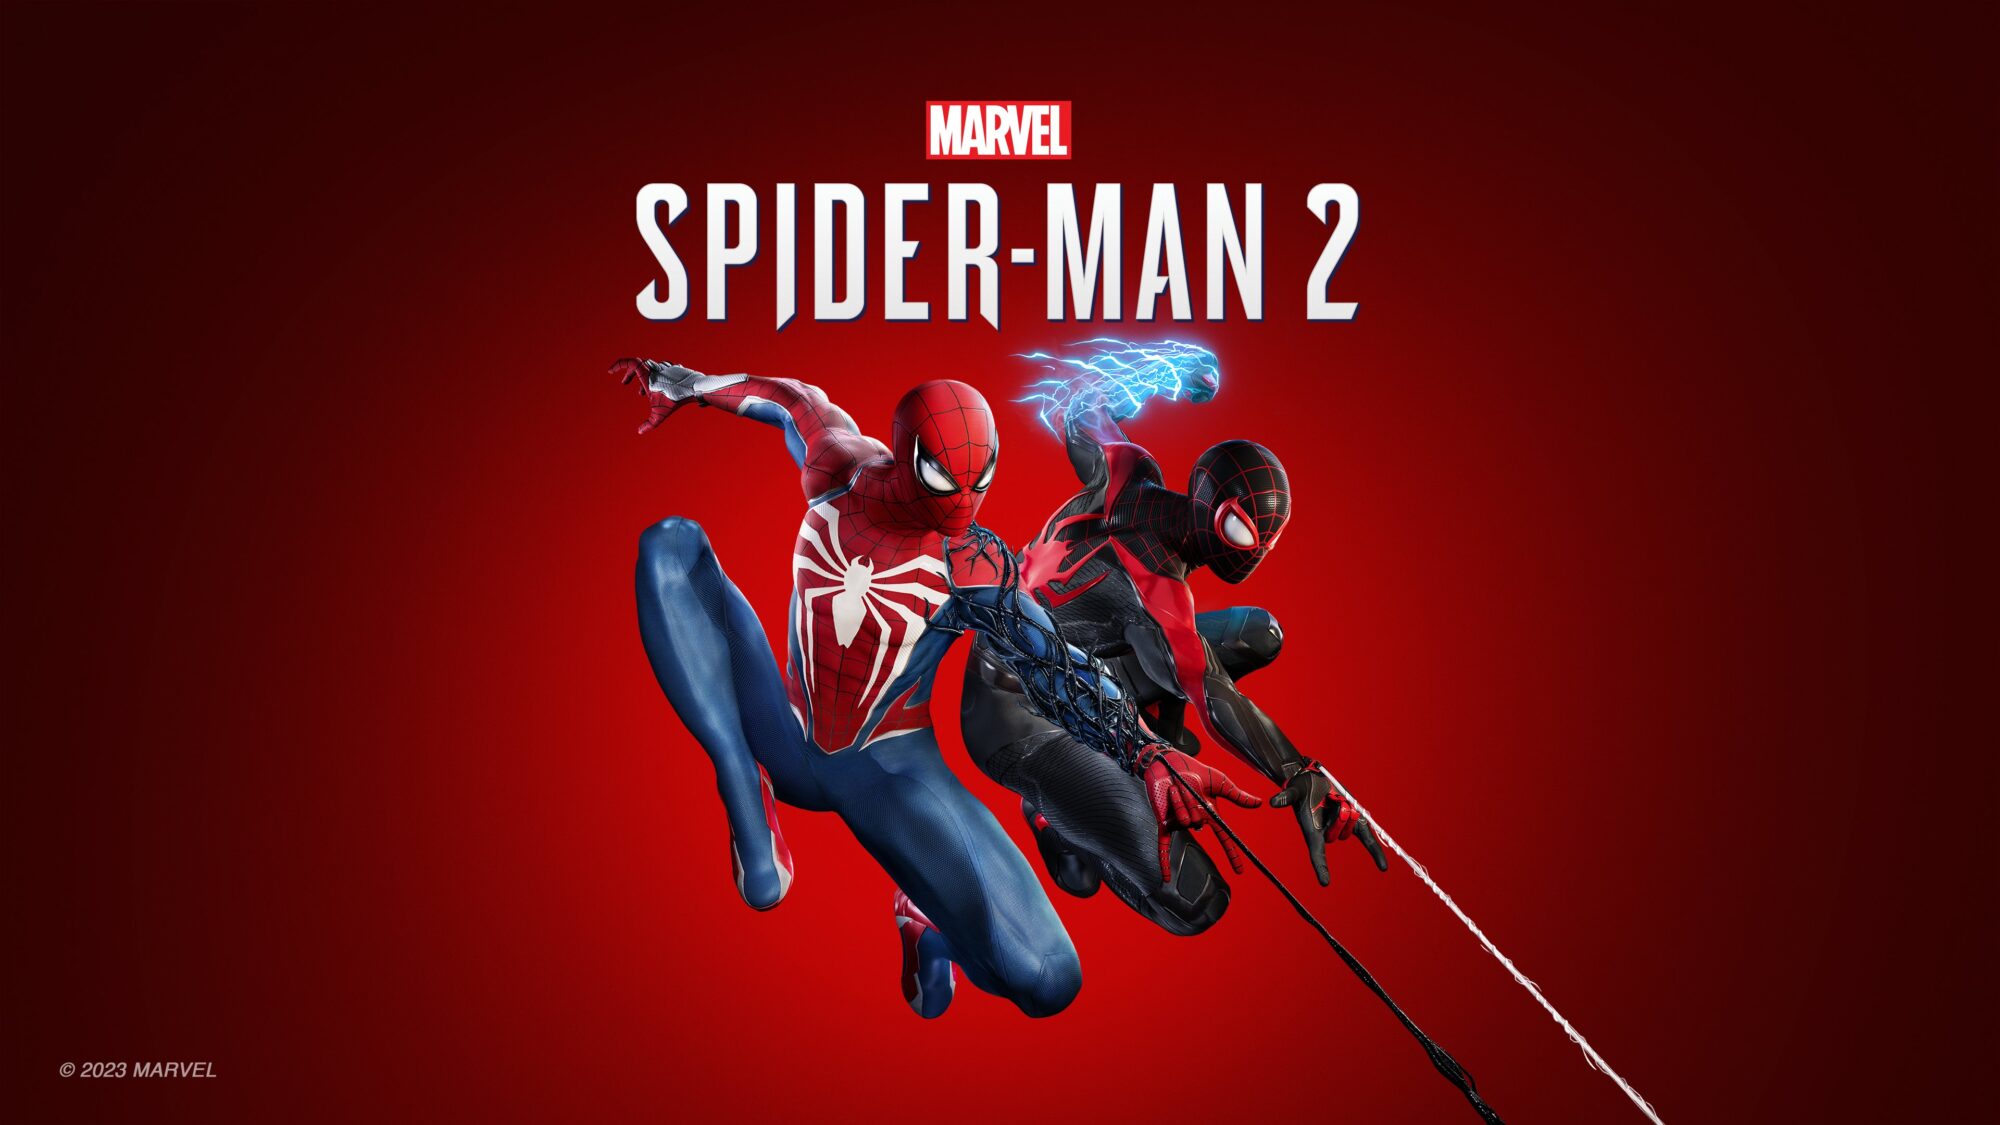 Spider-man 2 Insomniac Games MIles Morales Peter Parker